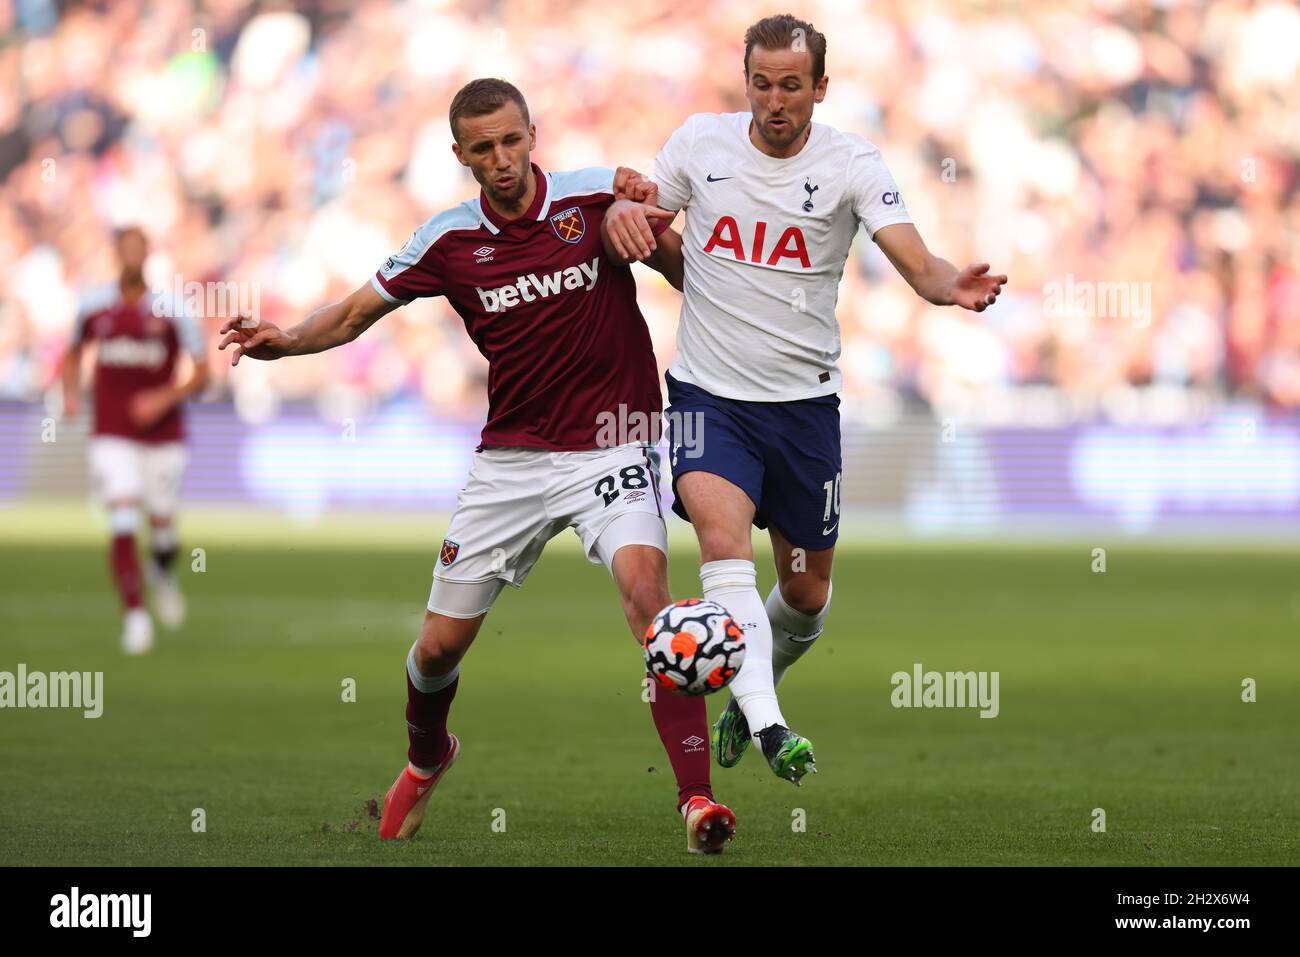 Tottenham vs West Ham live: Tomas Soucek own goal before Harry